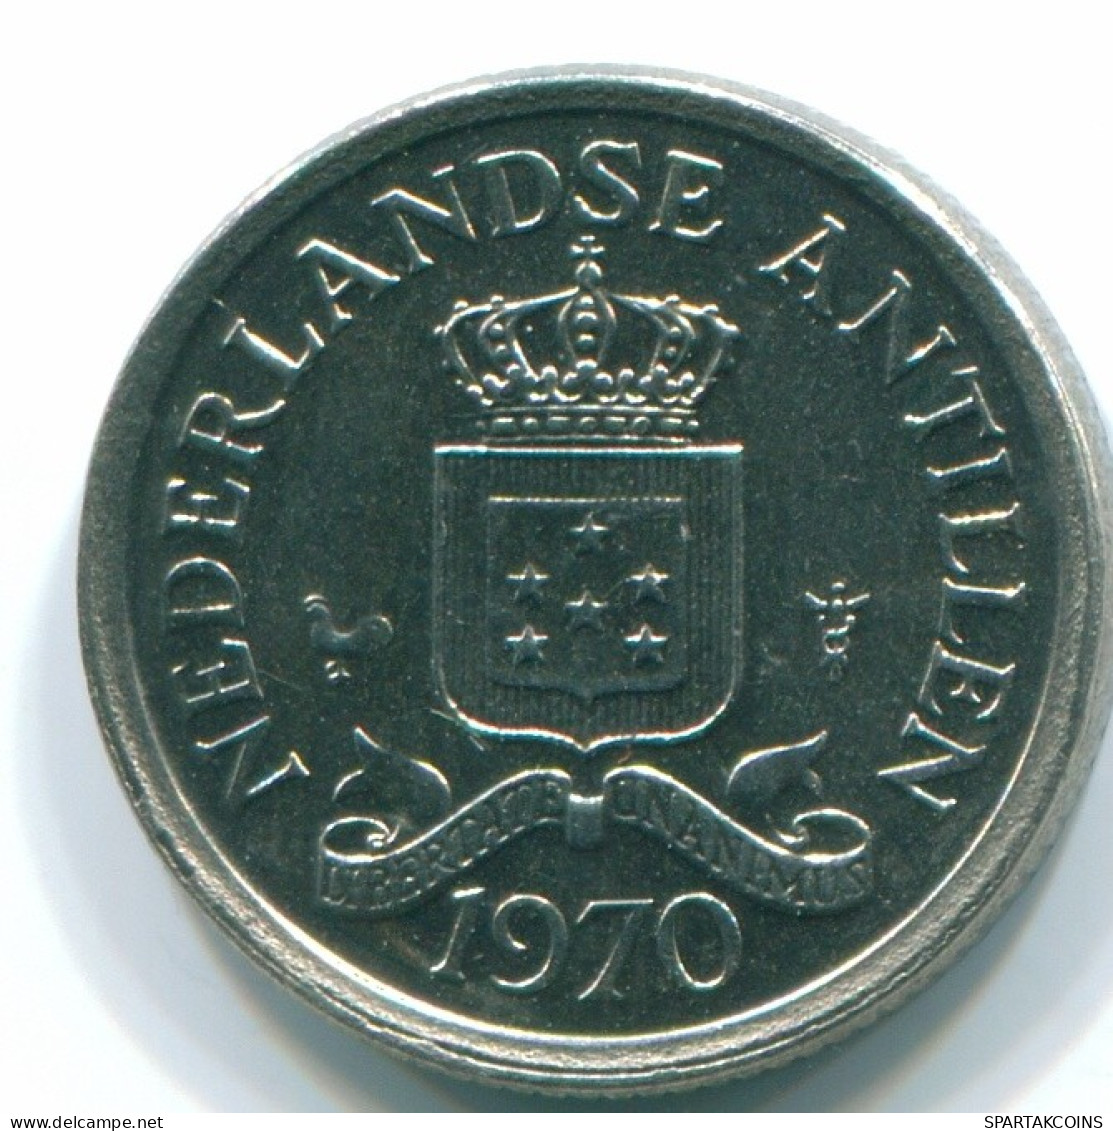 10 CENTS 1970 NIEDERLÄNDISCHE ANTILLEN Nickel Koloniale Münze #S13383.D.A - Niederländische Antillen